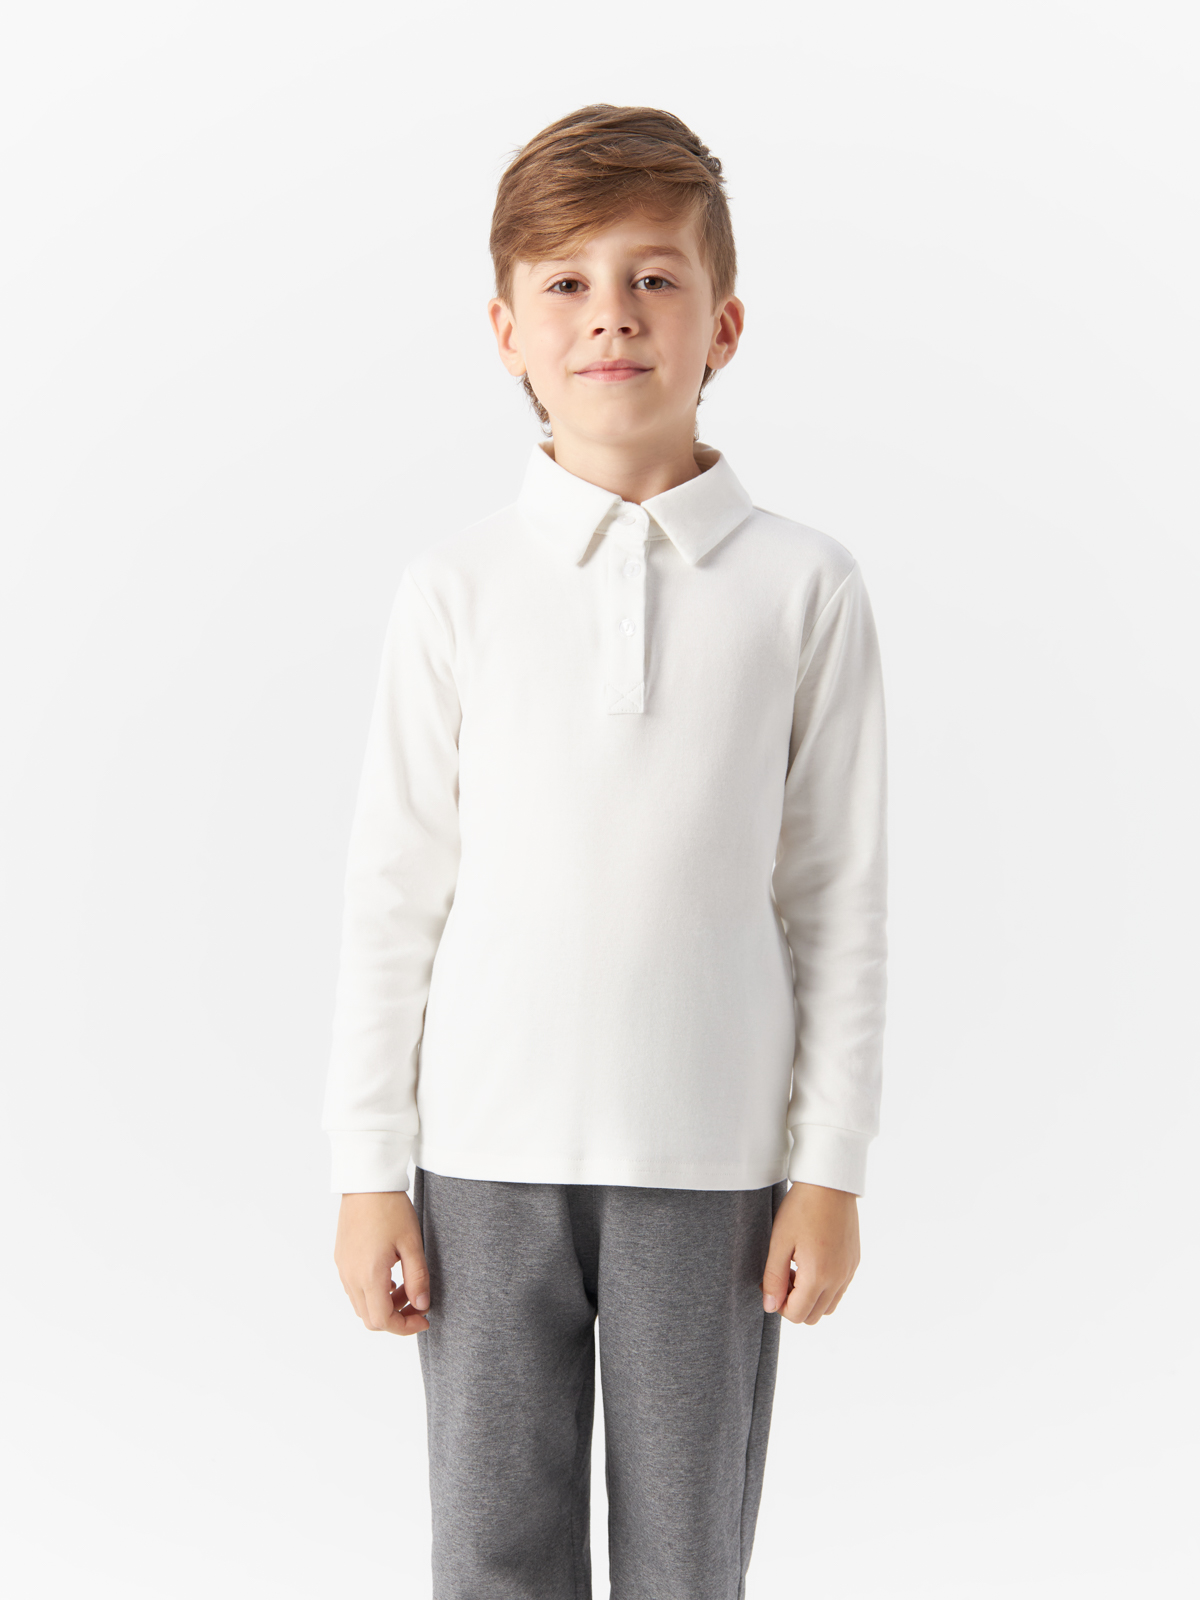 Рубашка Yiwu Xflot Supply Chain детская, BS-8white, размер 120 см